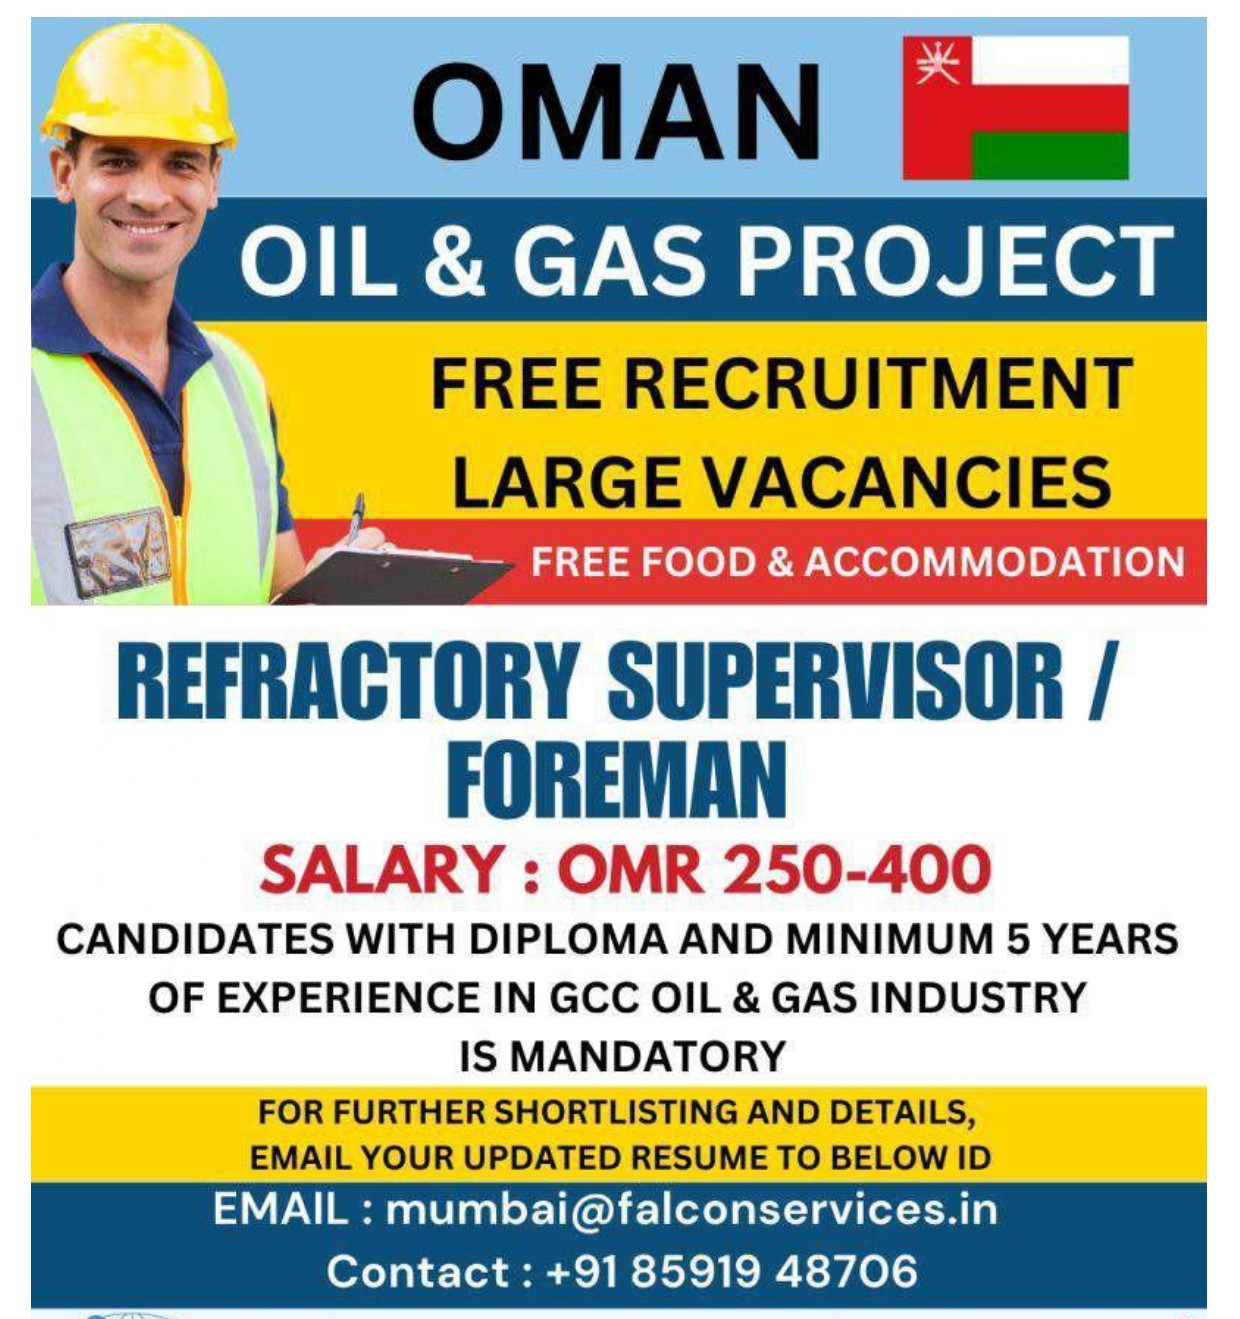 Free Recruitment Oil & gas for Qatar